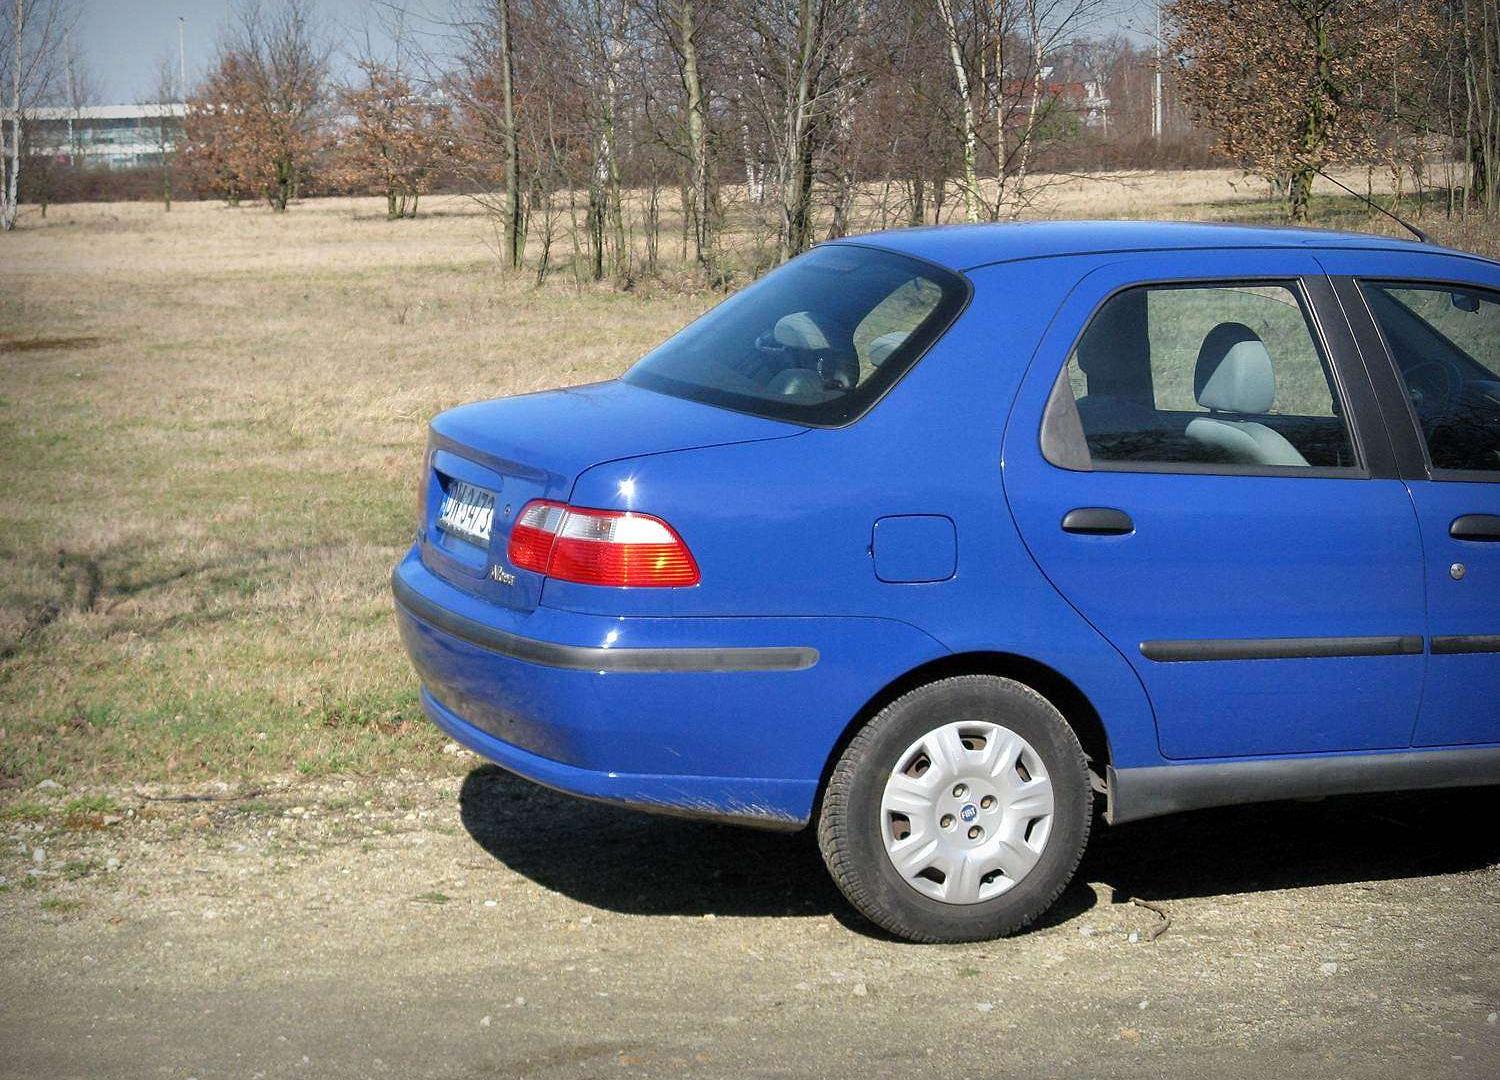 Fiat Albea budżetowe auta są OK? • AutoCentrum.pl